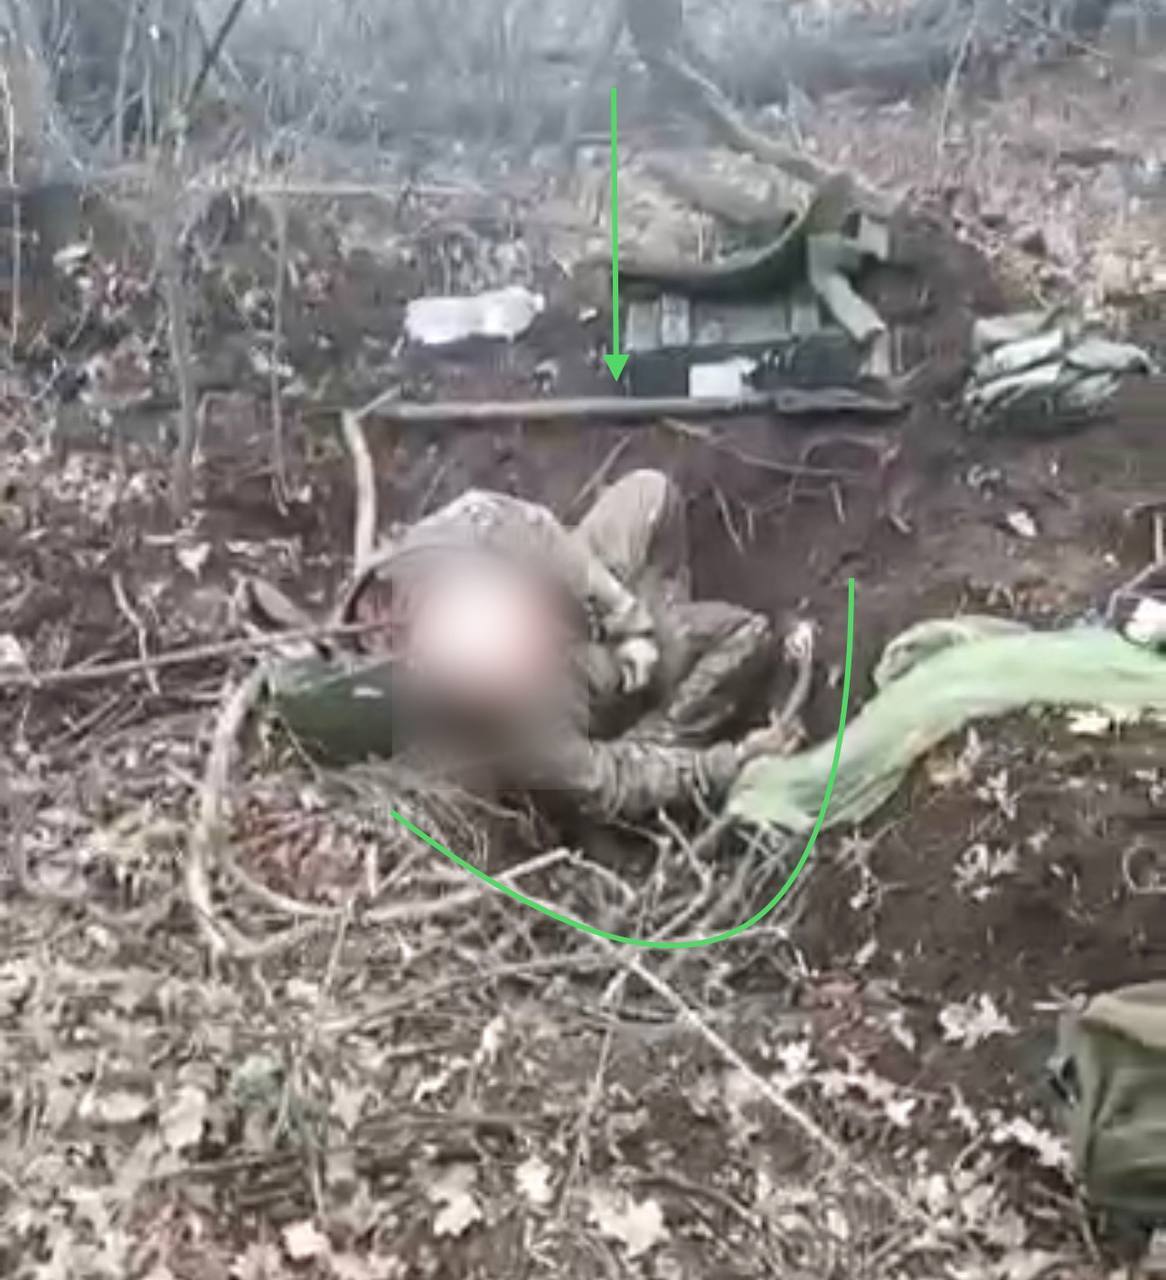 Заставили копать себе могилу: в сети обратили внимание на жуткие детали с расстрелом оккупантами украинского воина